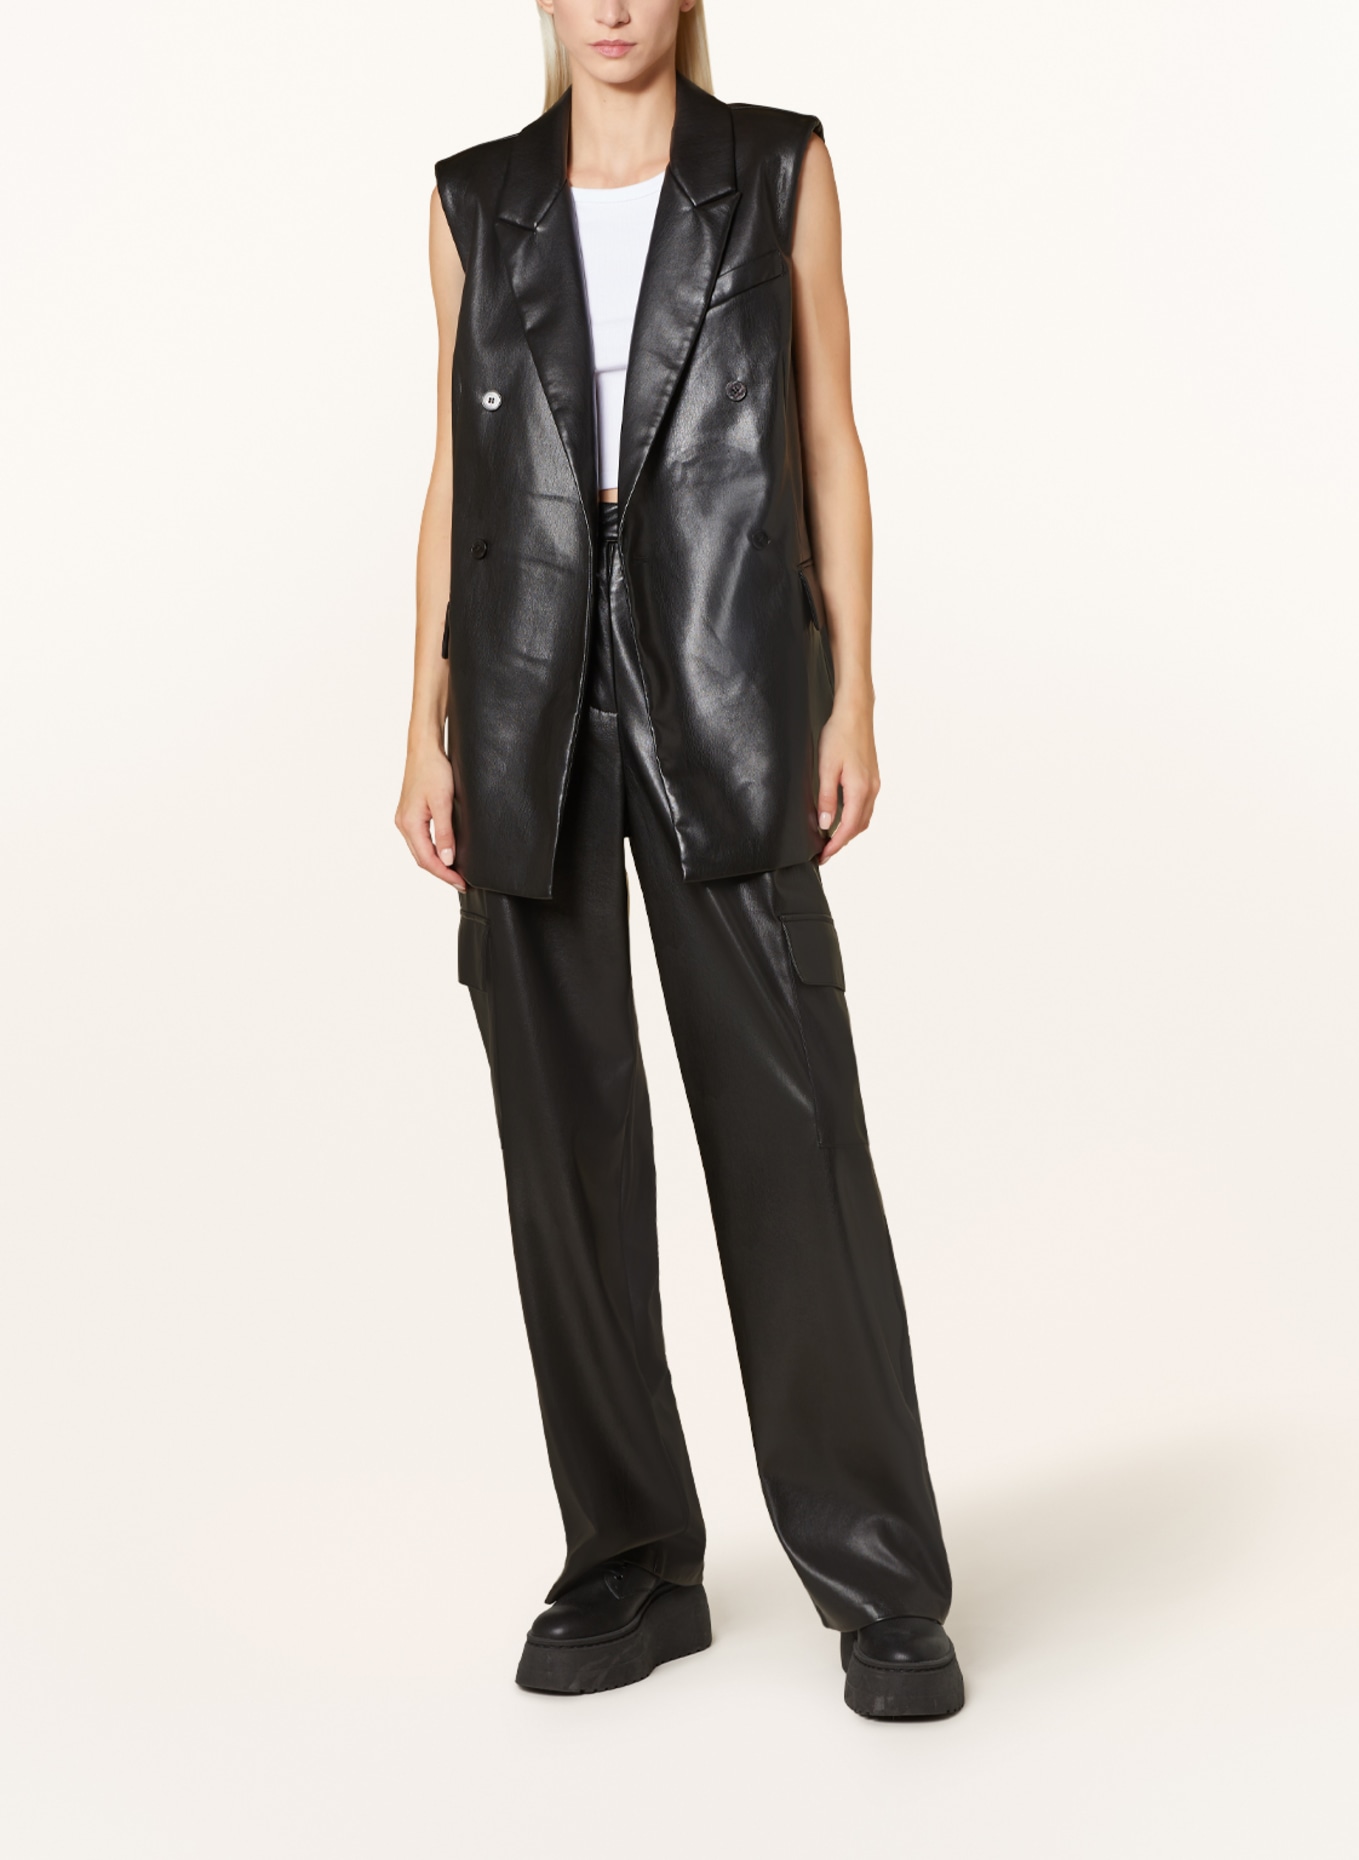 MRS & HUGS Blazer vest in leather look, Color: BLACK (Image 2)